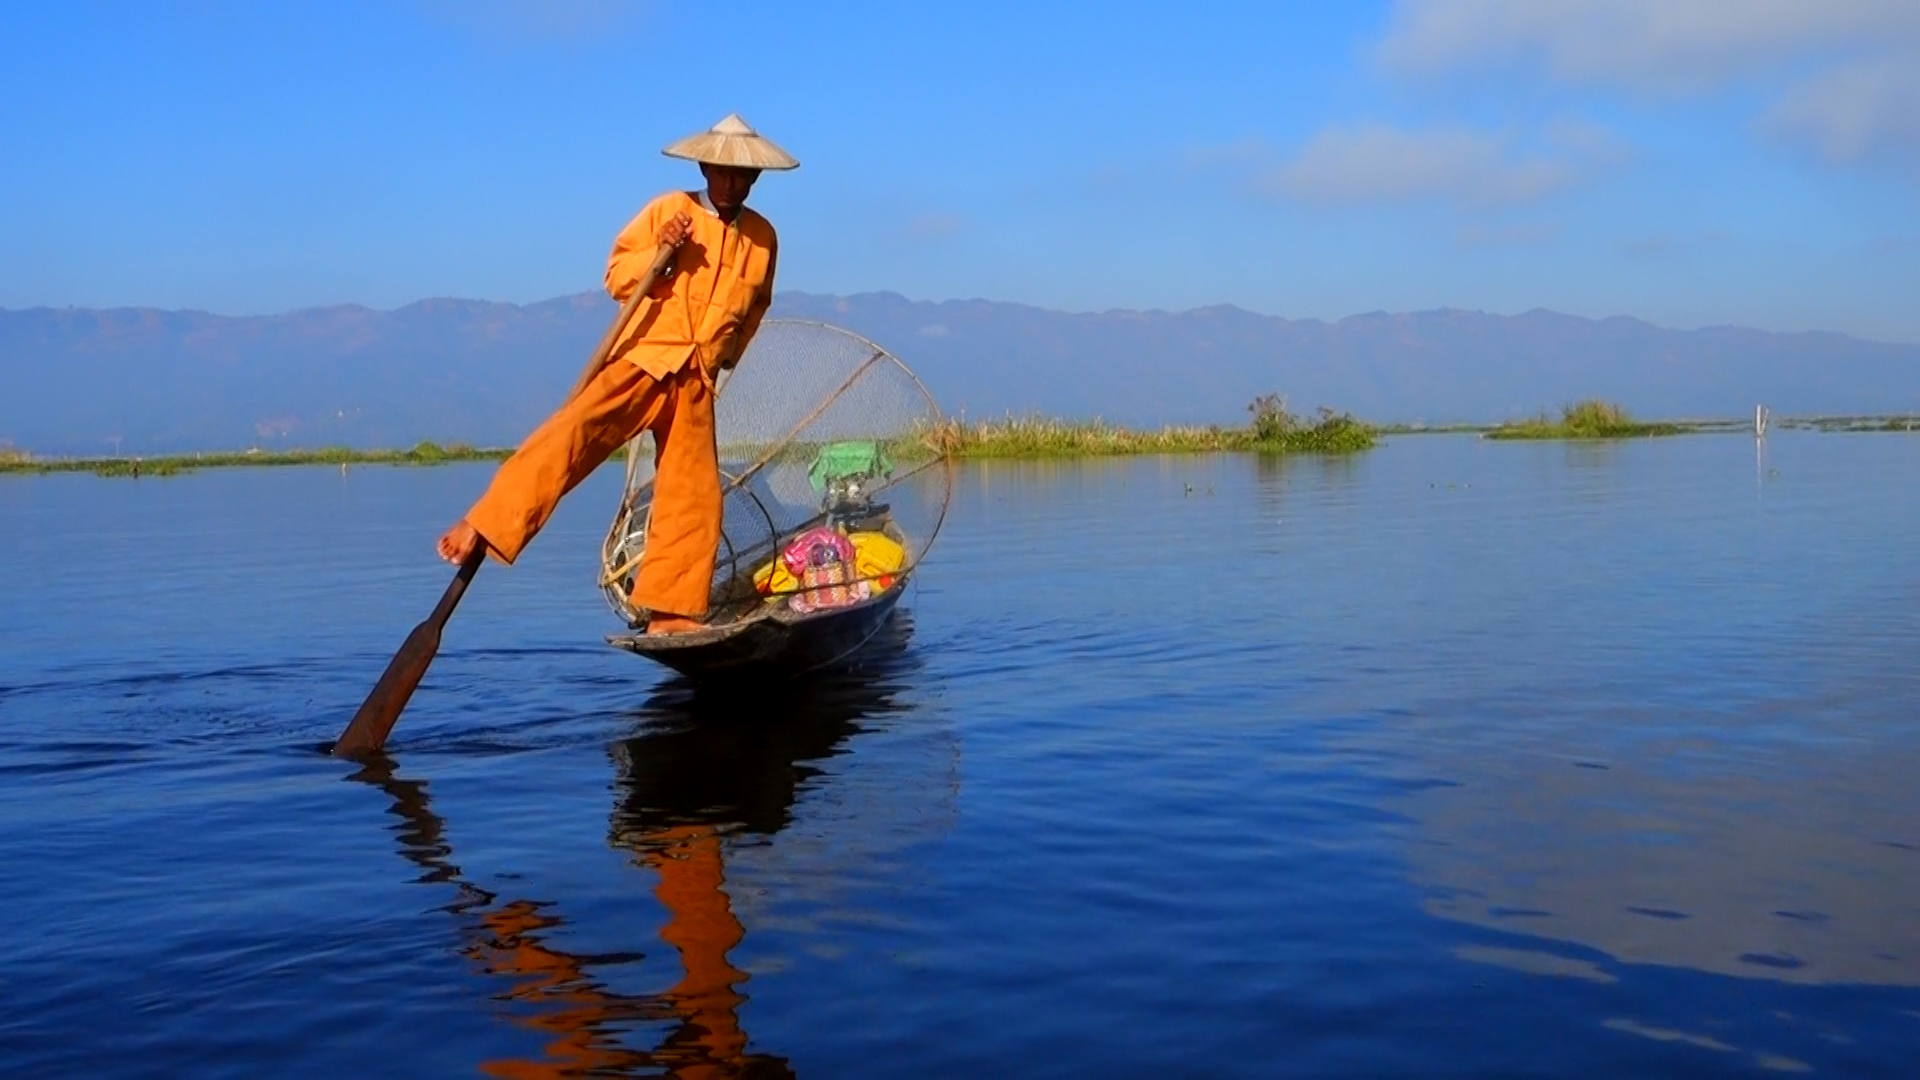 Сладководното езеро Инле е второто по големина в Мианмар с площ от 116 km2 и едно от най-високо разположените, с надморска височина от 880 метра.

Този необикновен воден басейн е дом на редица ендемични видове. Установени са над двадесет вида охлюви и девет вида риби, които не се срещат никъде другаде по света.